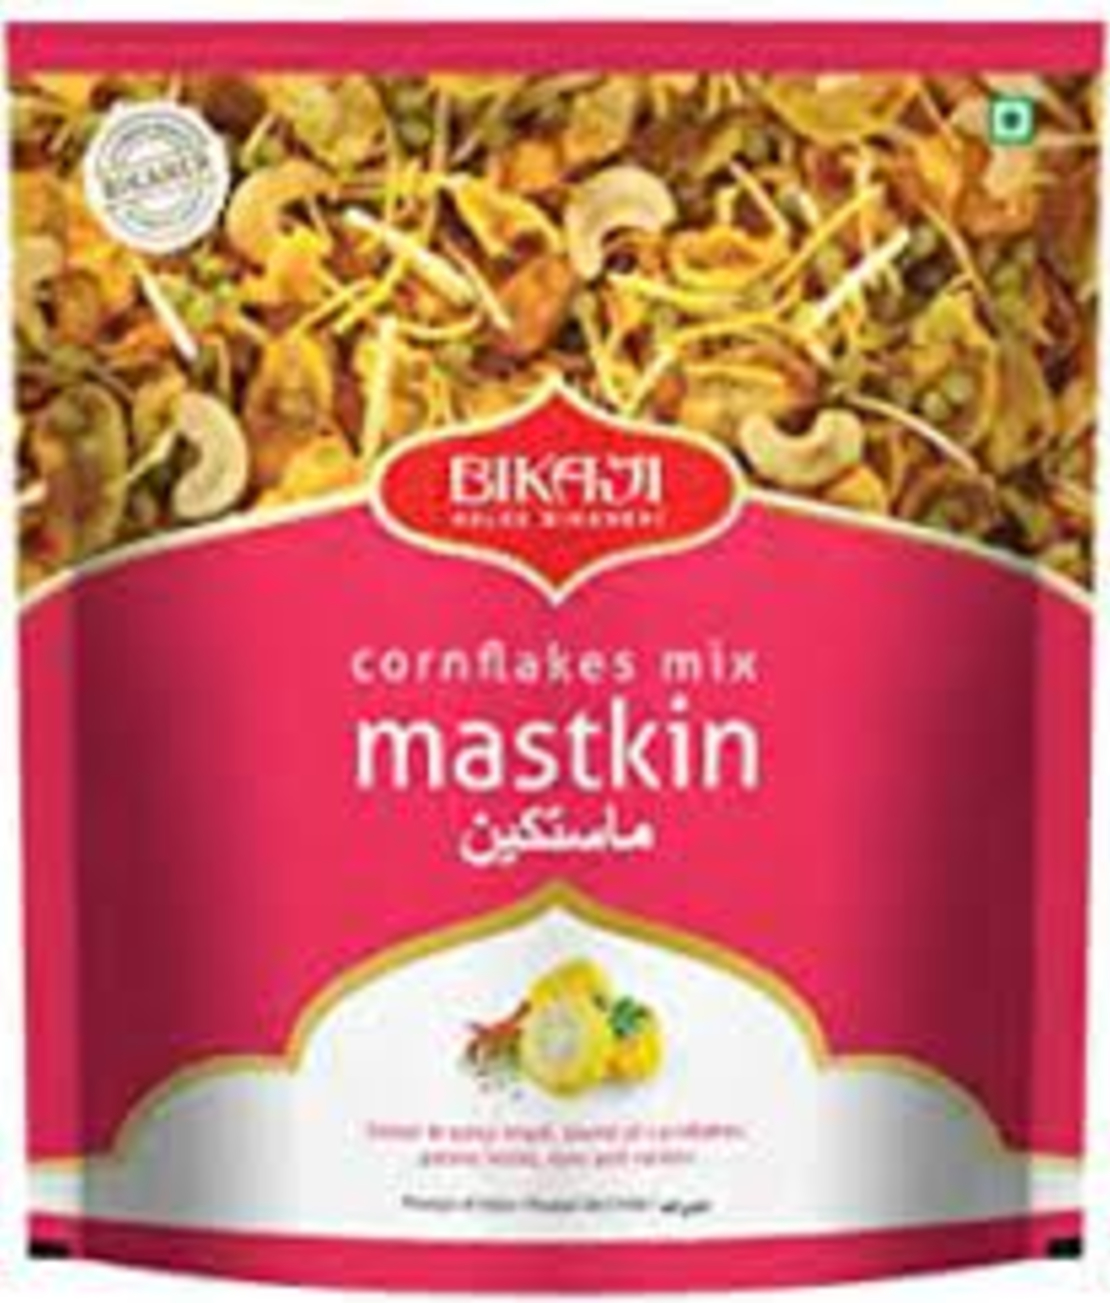 Bikaji - Cornflakes mix Mastkin 400g